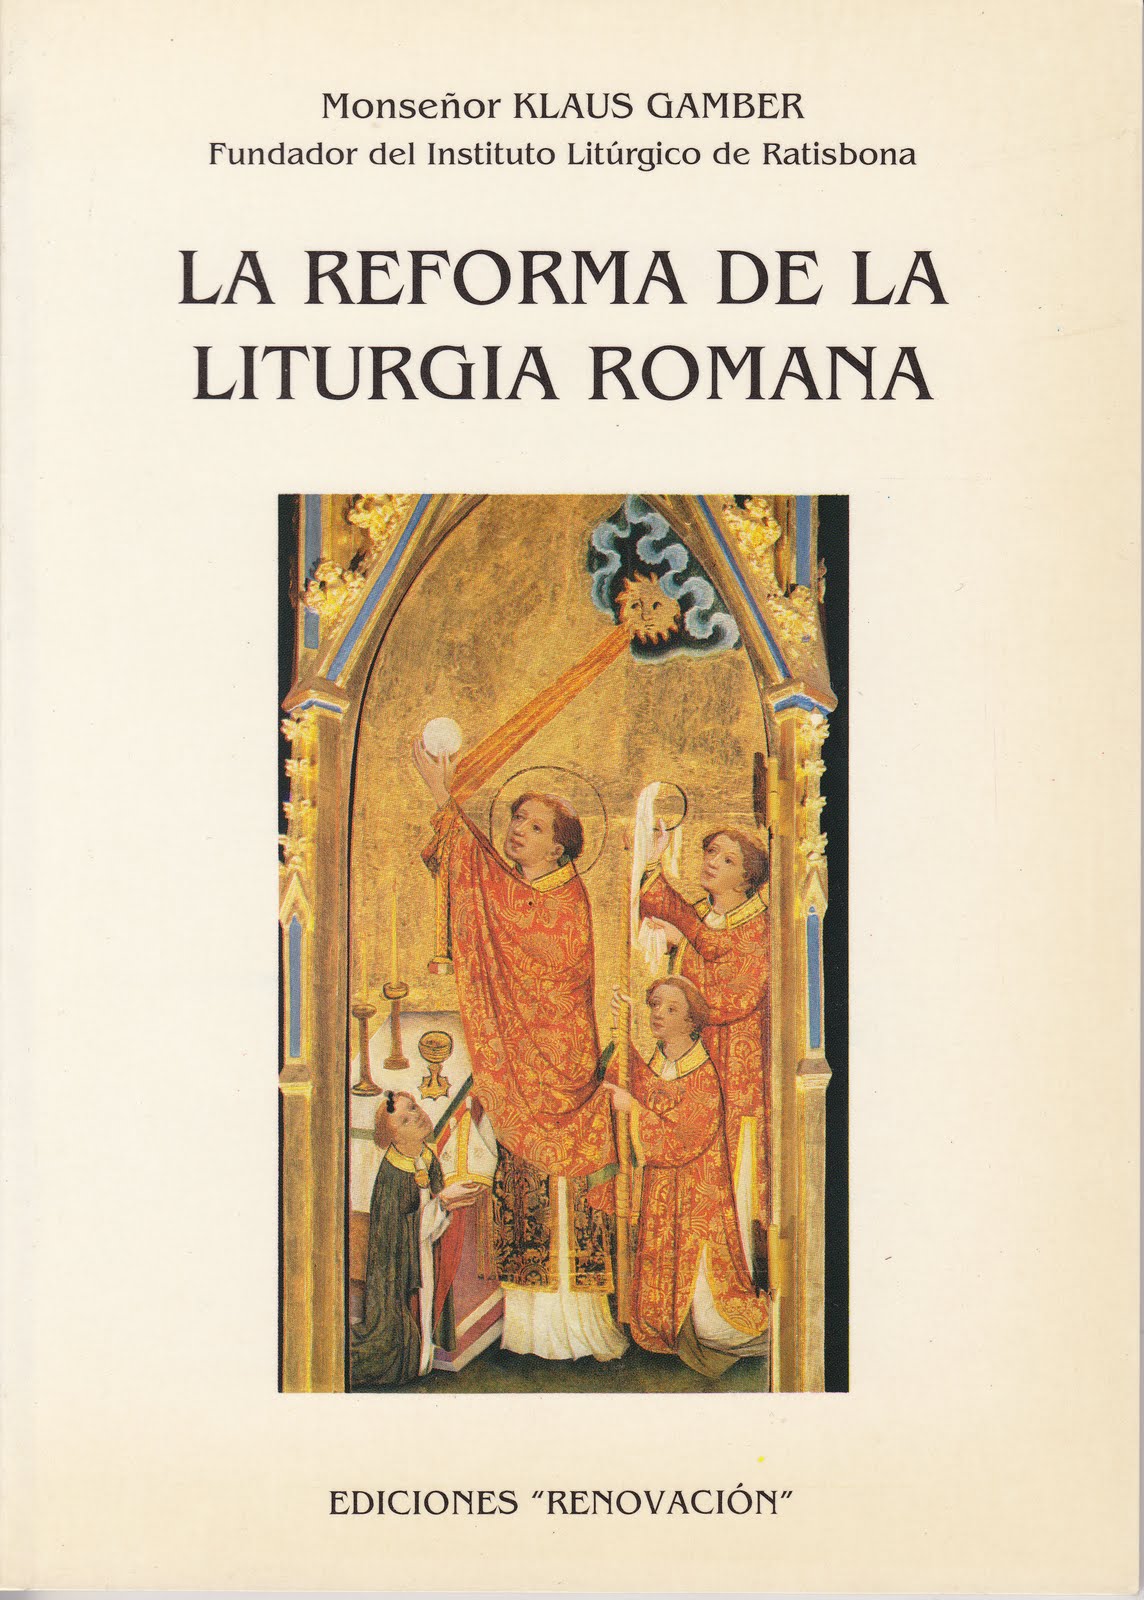 "La Reforma de la Liturgia Romana"